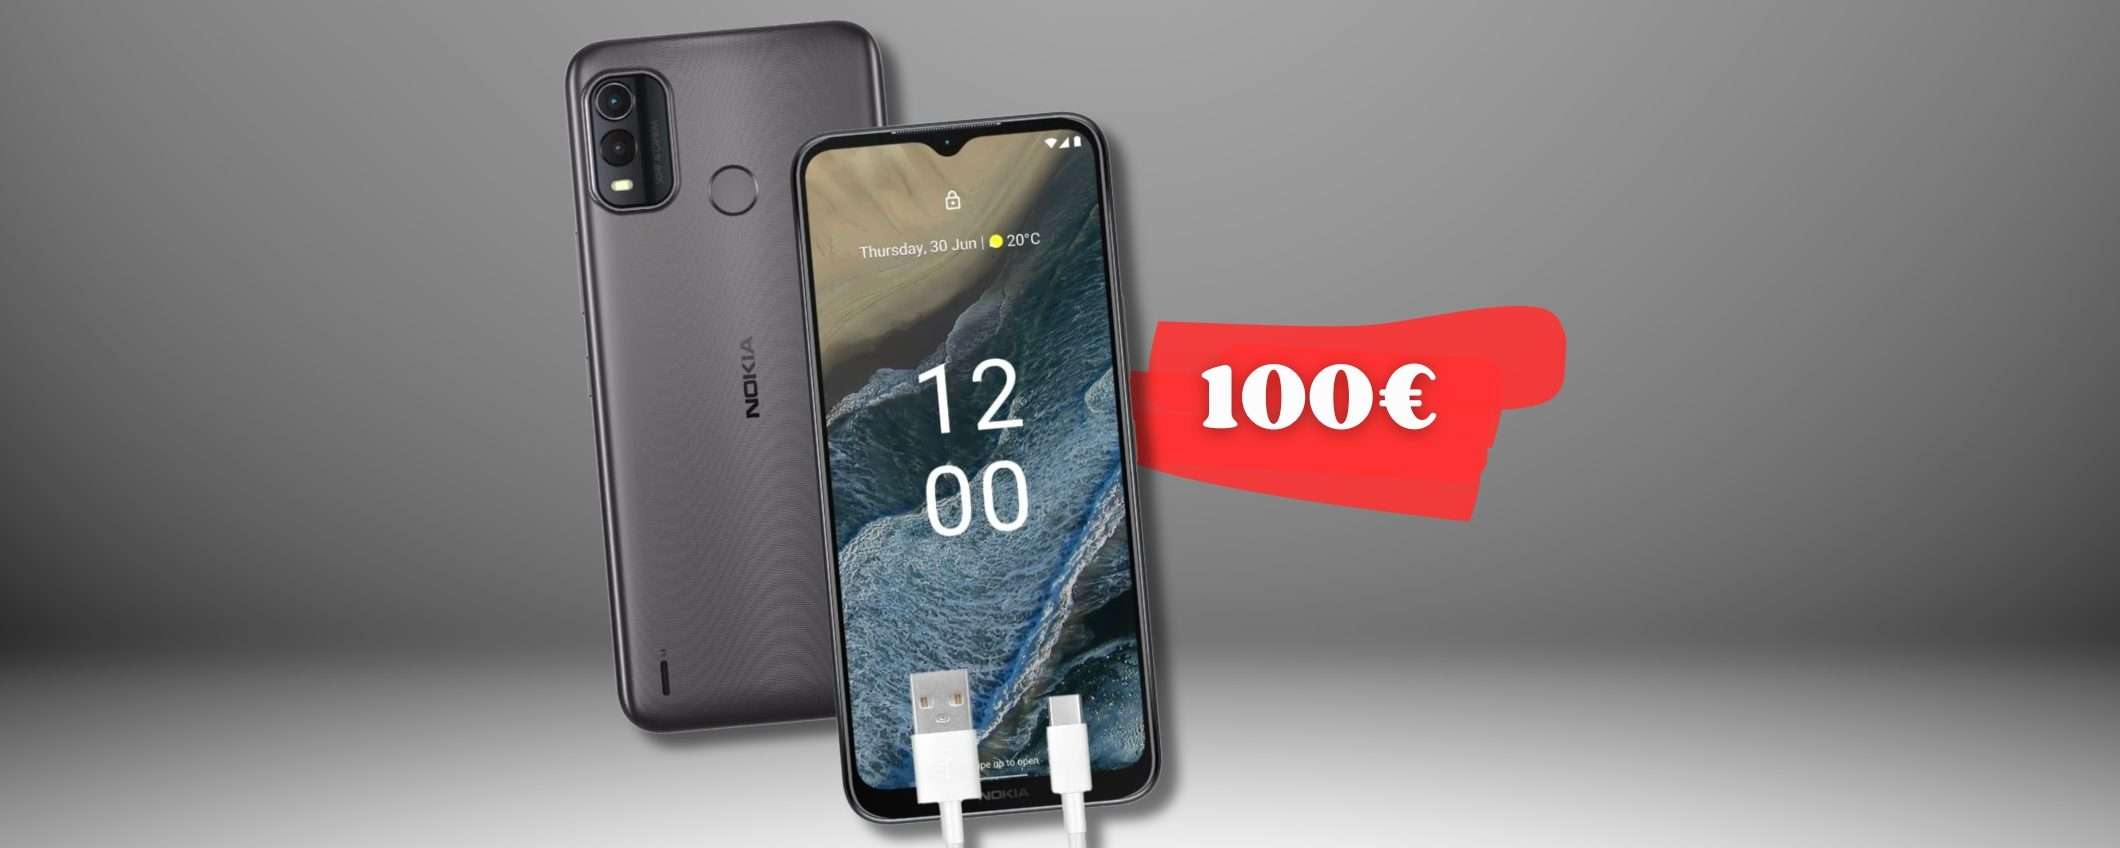 Nokia G11 Plus, smartphone a 100€ DUAL SIM da prendere AL VOLO